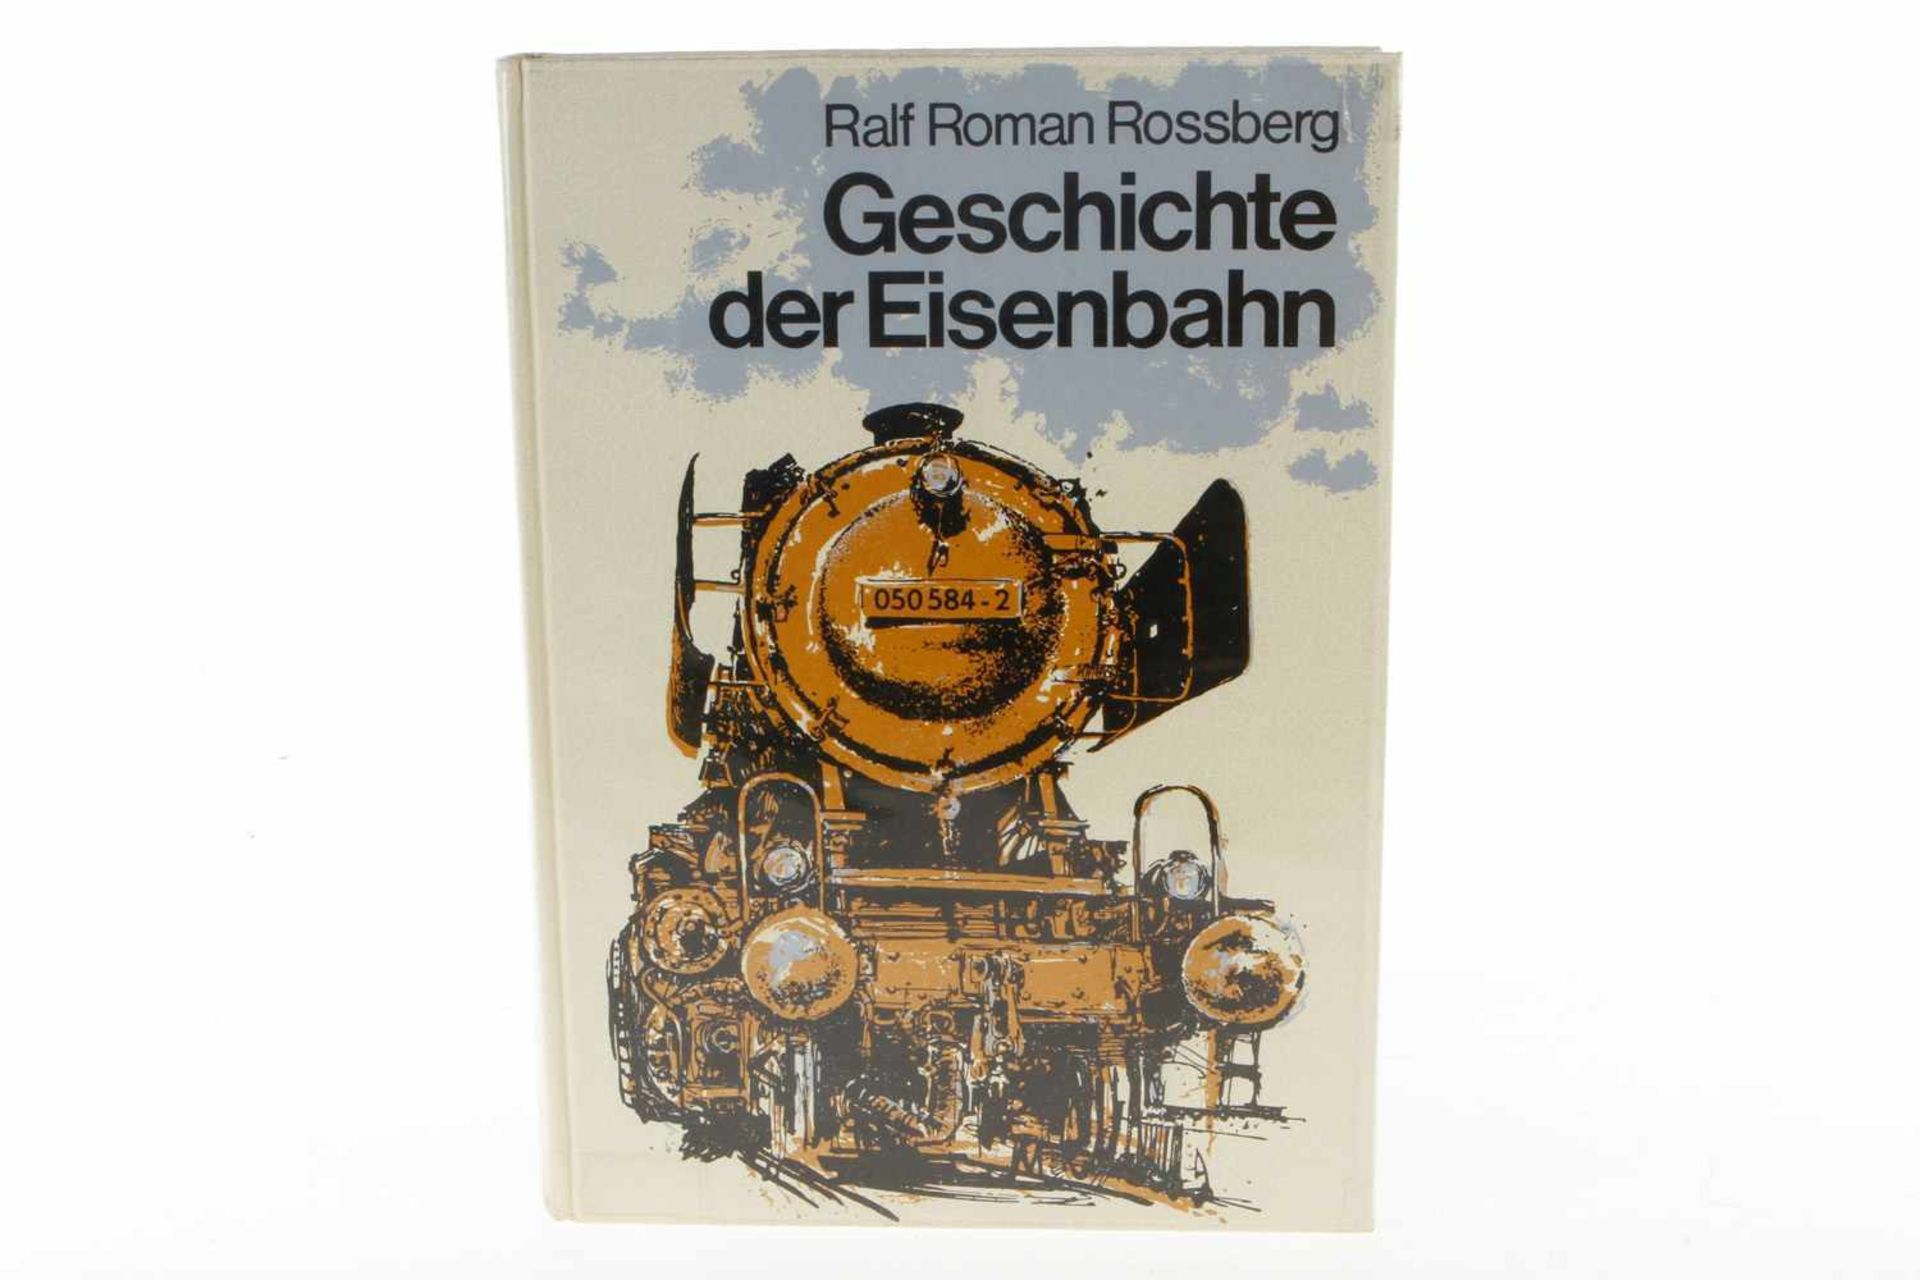 Buch "Geschichte der Eisenbahn", 1977, 550 Seiten, Alterungsspuren